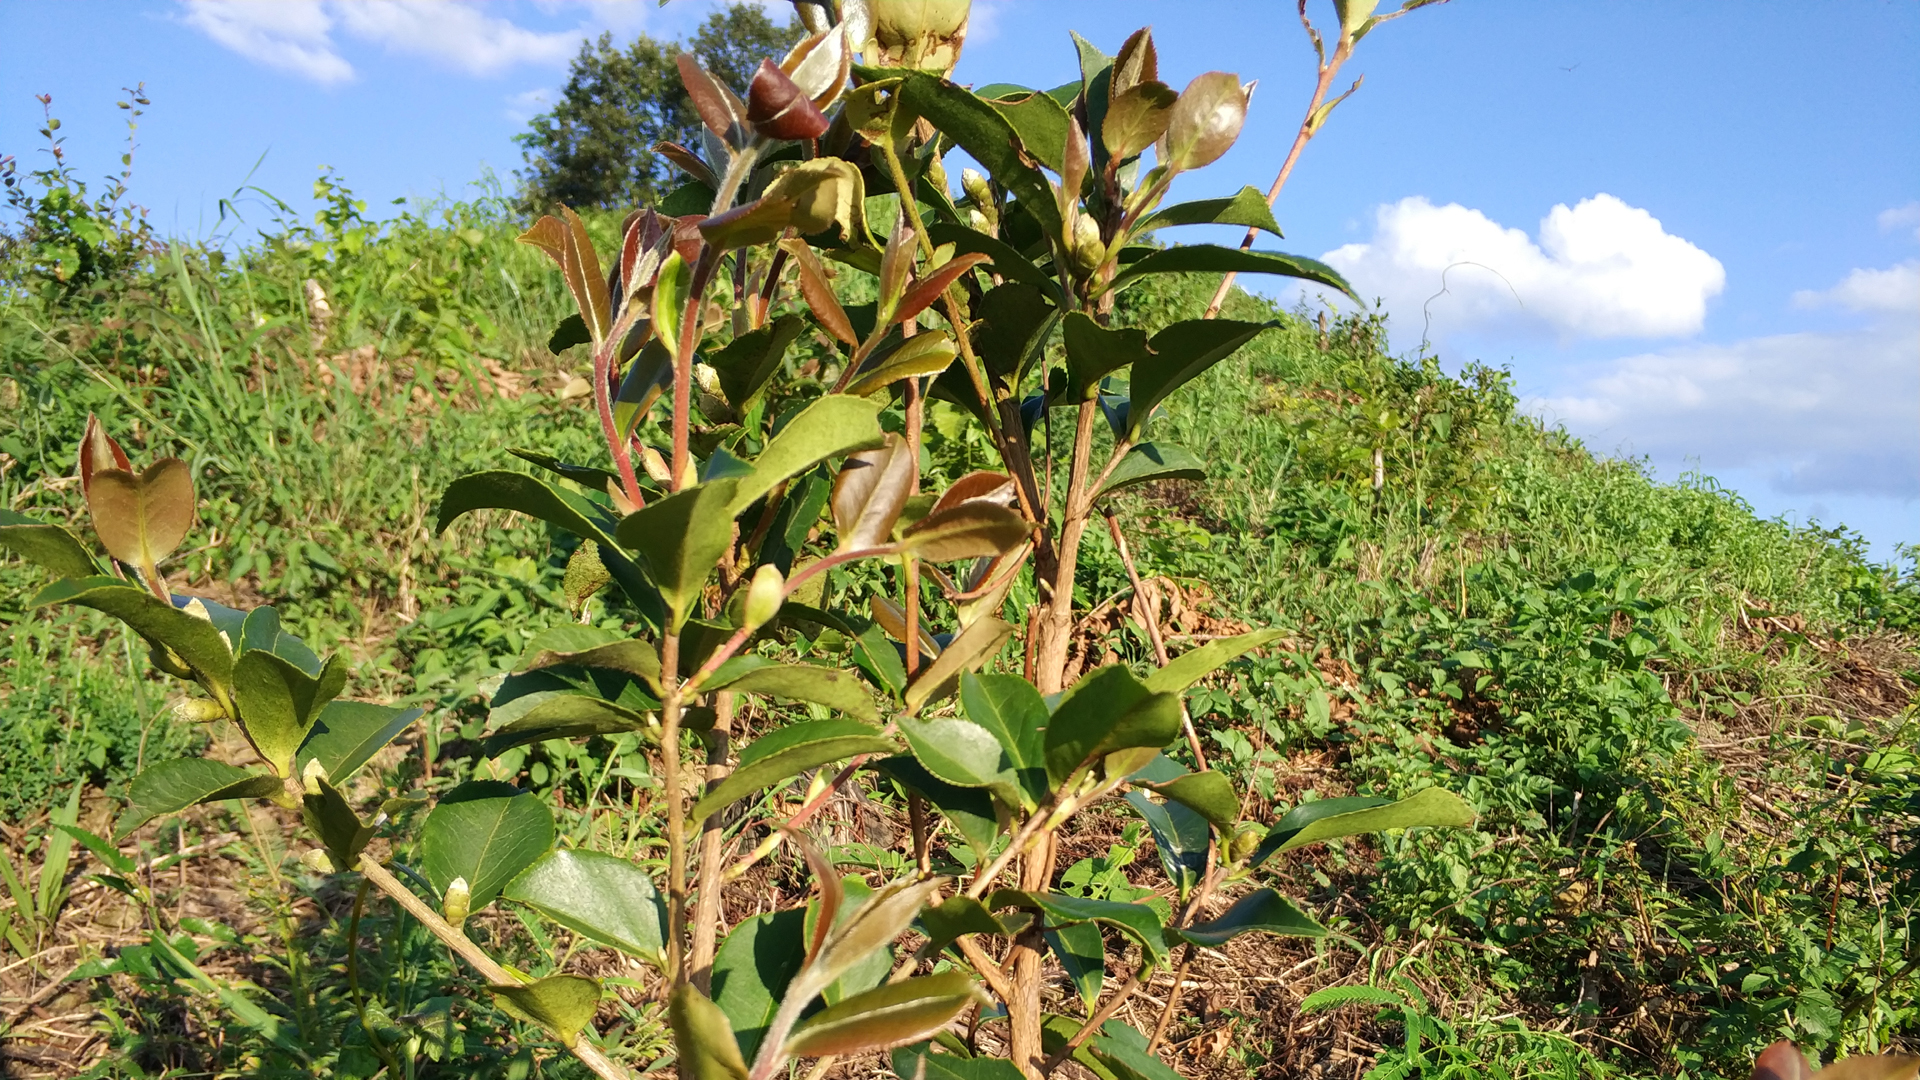 田林油茶树上的花蕾孕育着无限希望